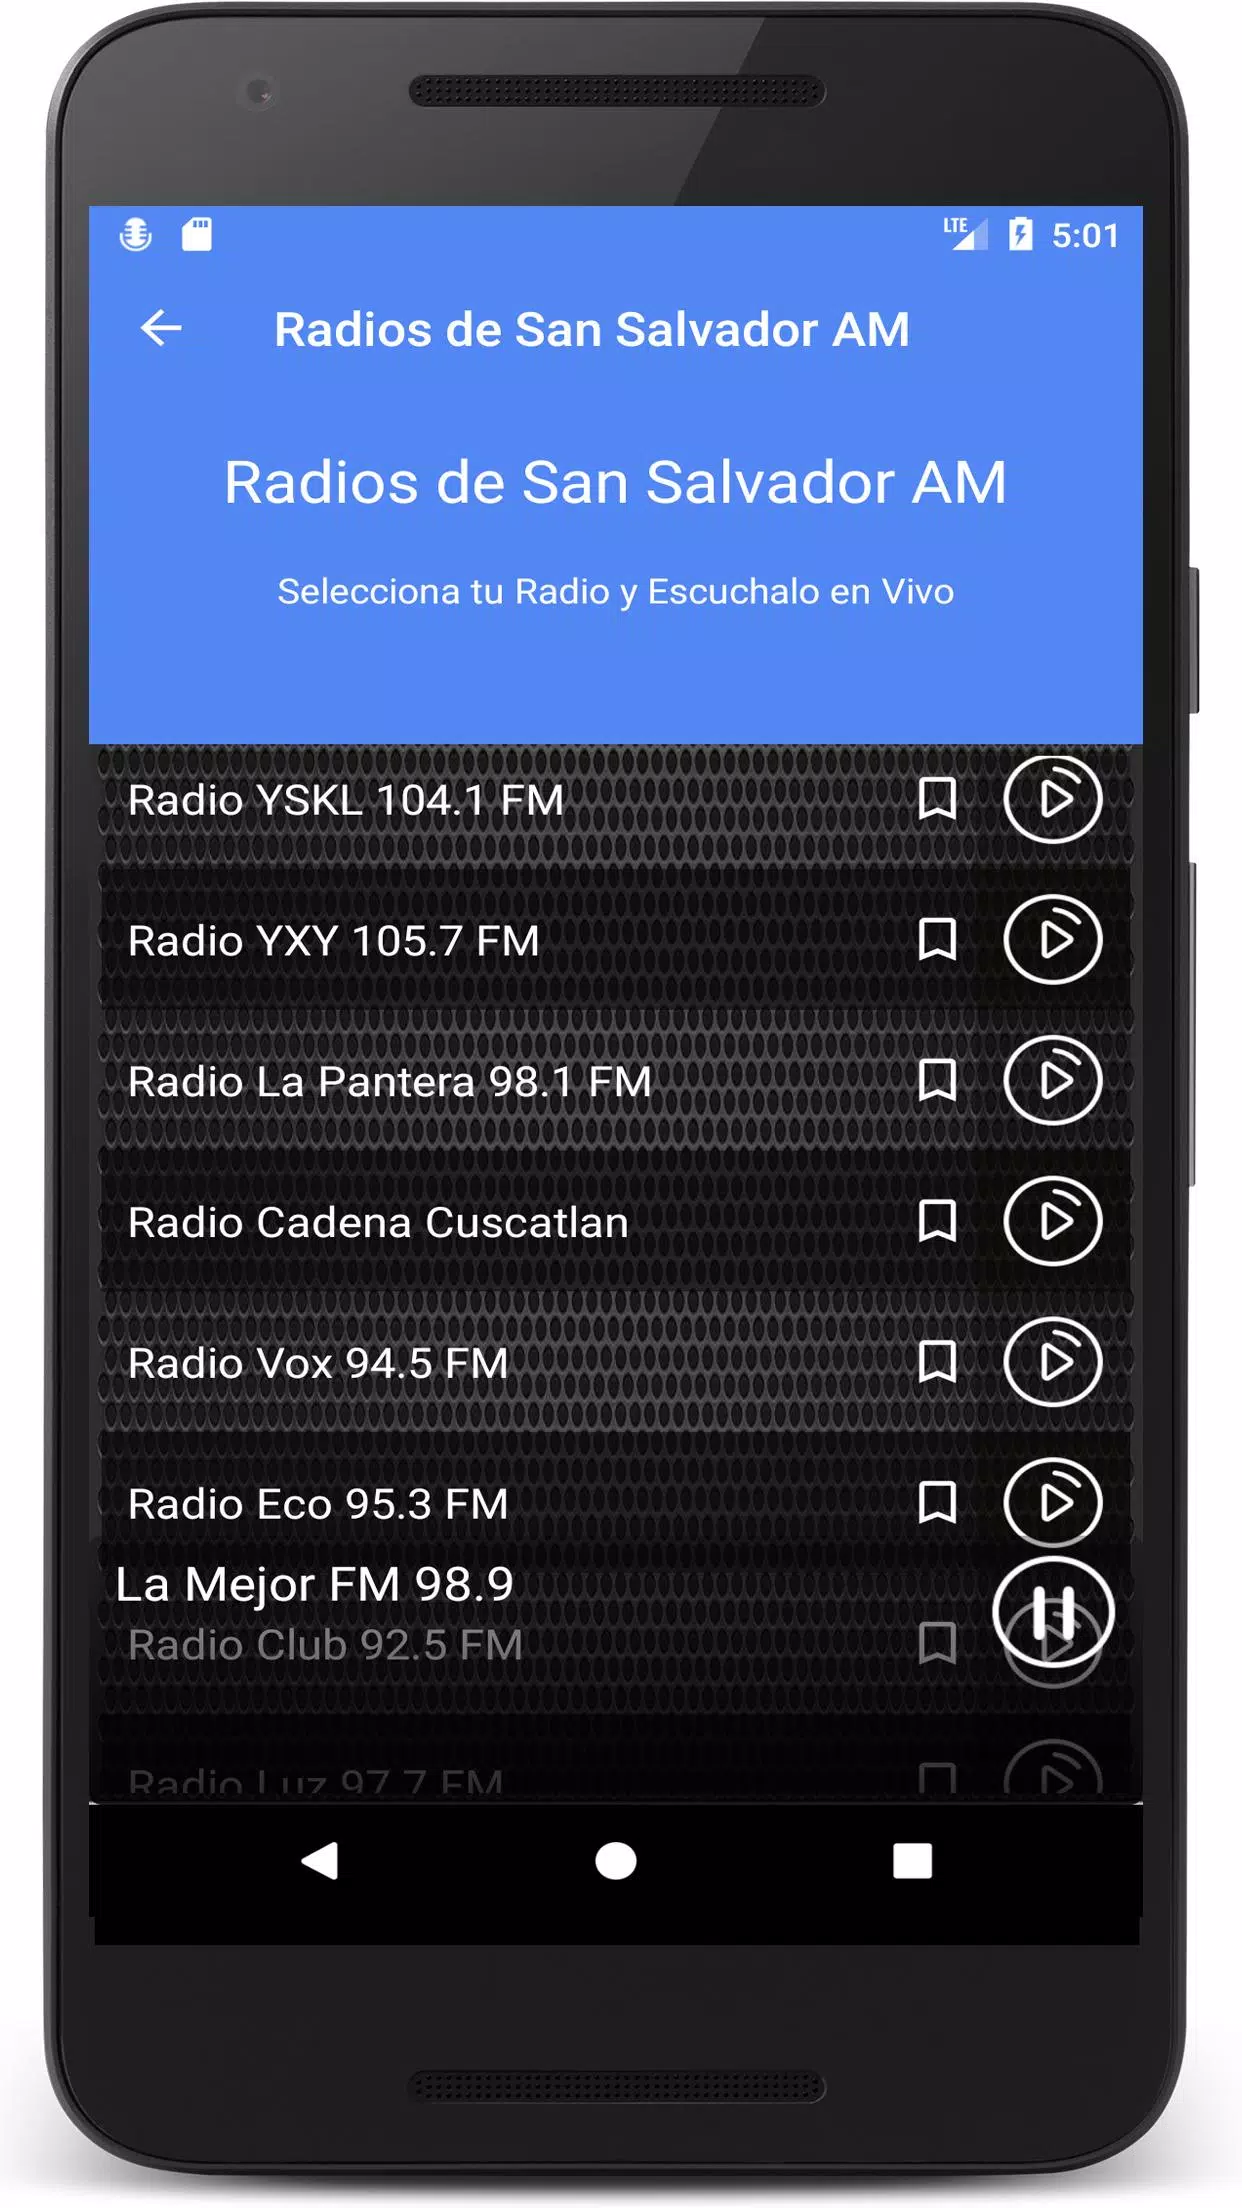 下载Radios el Salvador en Vivo - Emisoras de radio FM的安卓版本